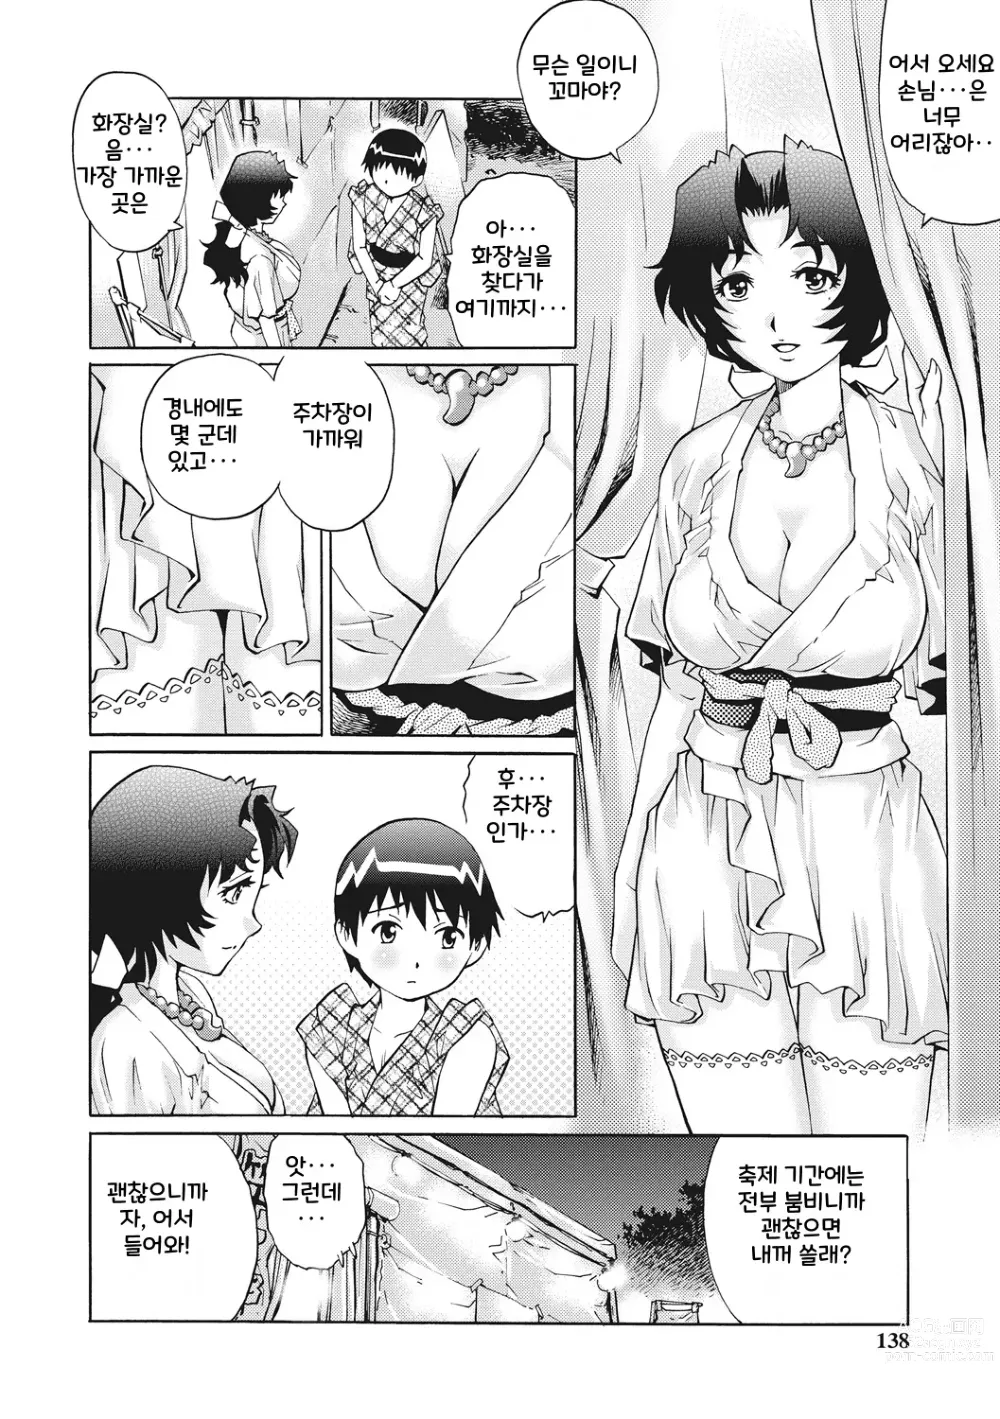 Page 112 of manga Doutei Viking!